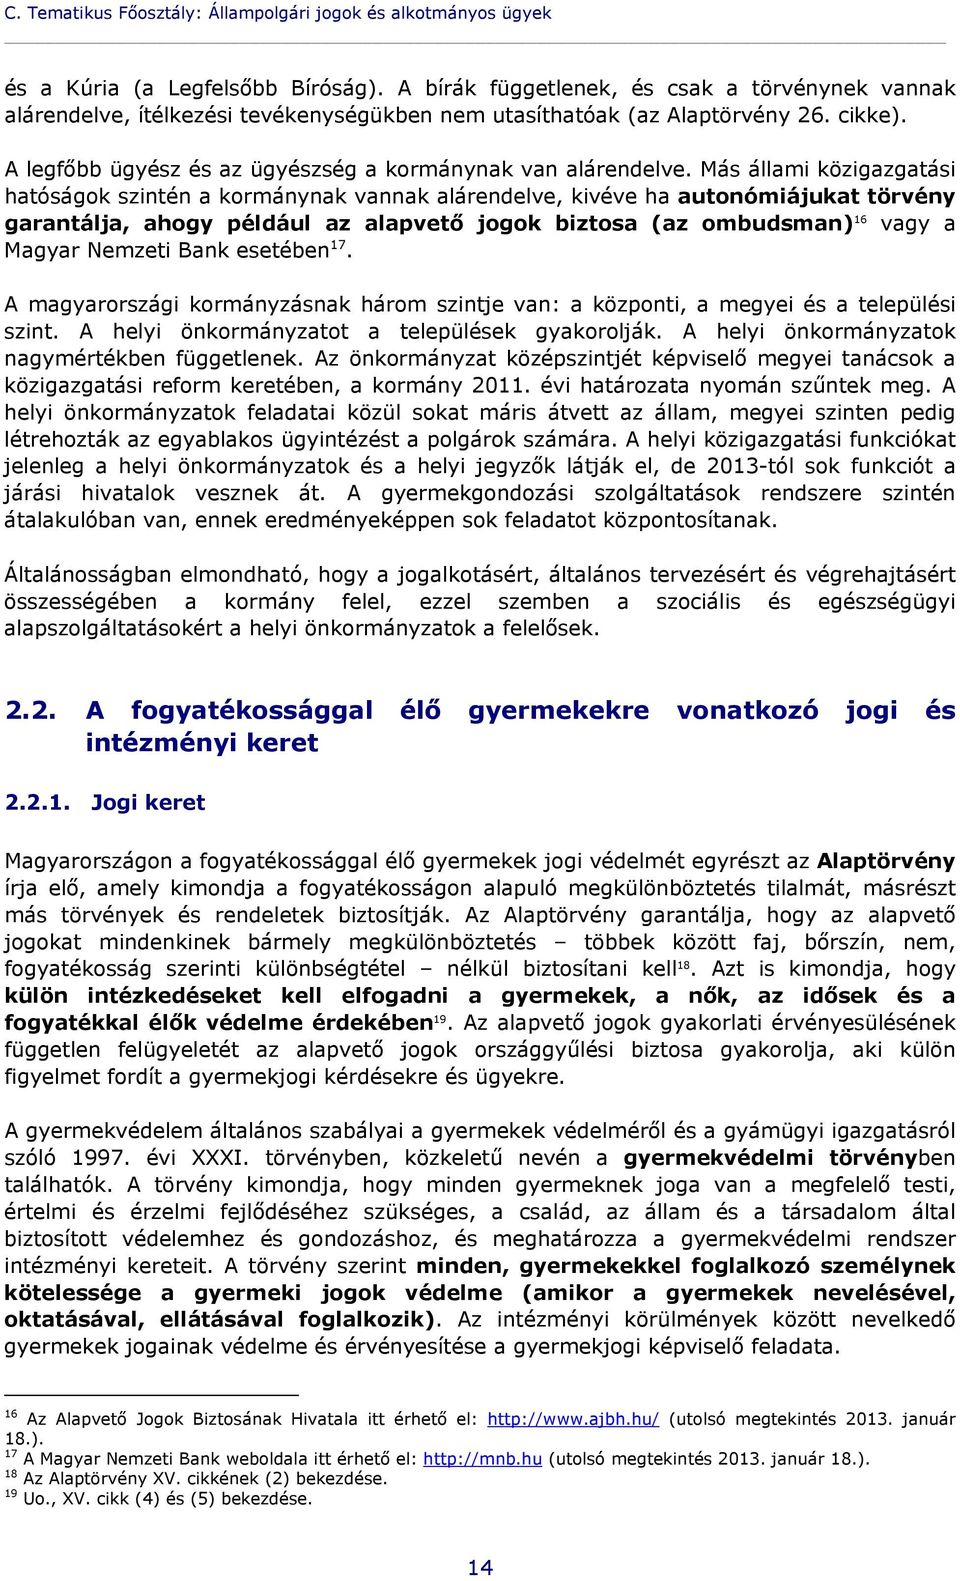 Más állami közigazgatási hatóságok szintén a kormánynak vannak alárendelve, kivéve ha autonómiájukat törvény garantálja, ahogy például az alapvető jogok biztosa (az ombudsman) 16 vagy a Magyar